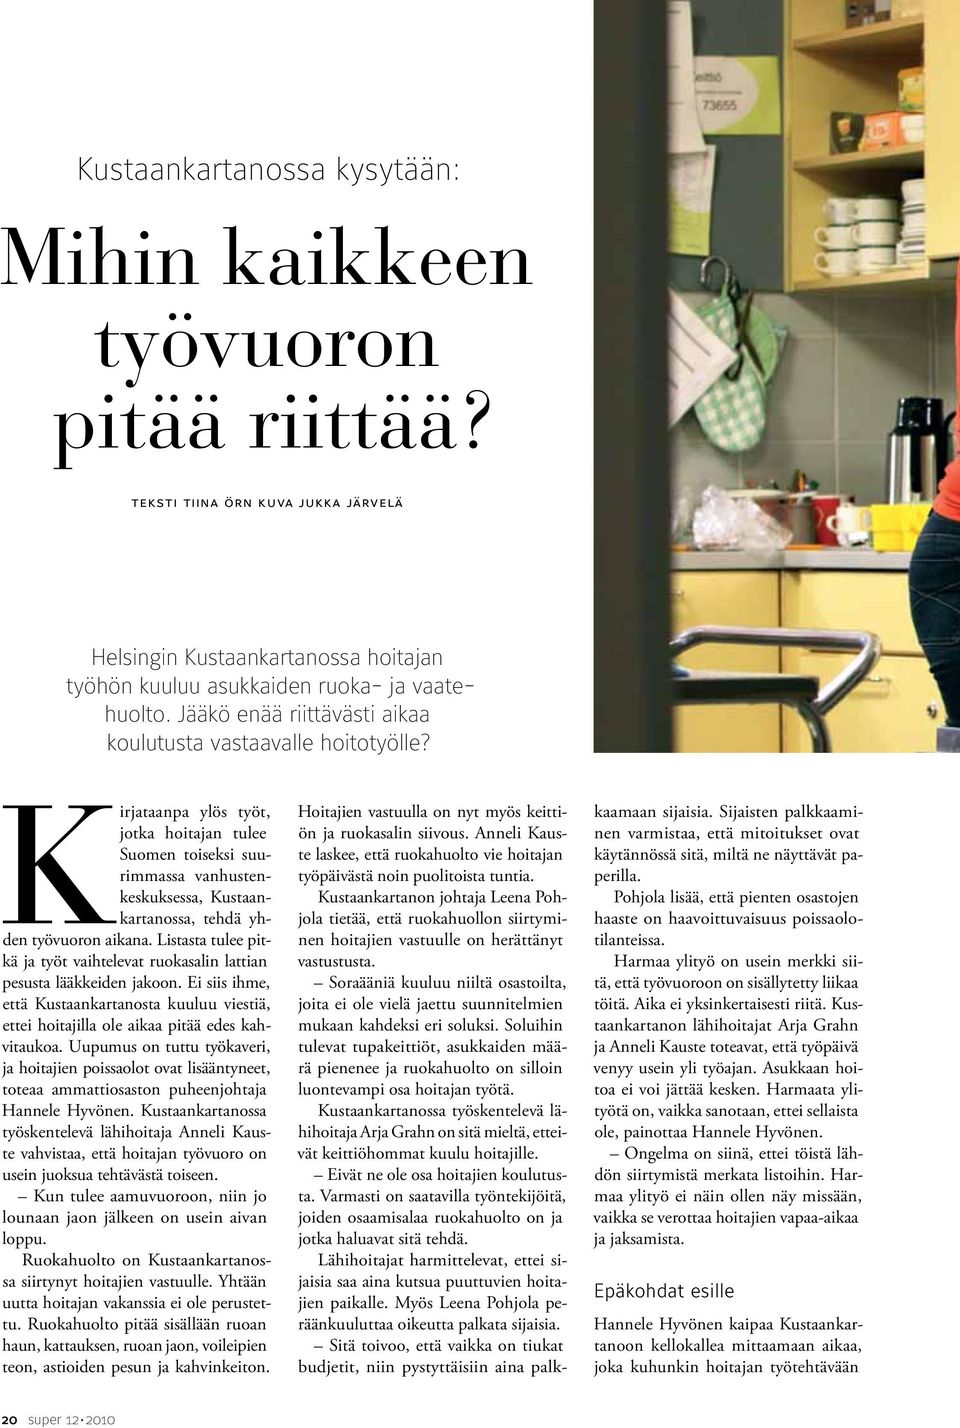 Kirjataanpa ylös työt, jotka hoitajan tulee Suomen toiseksi suurimmassa vanhustenkeskuksessa, Kustaankartanossa, tehdä yhden työvuoron aikana.